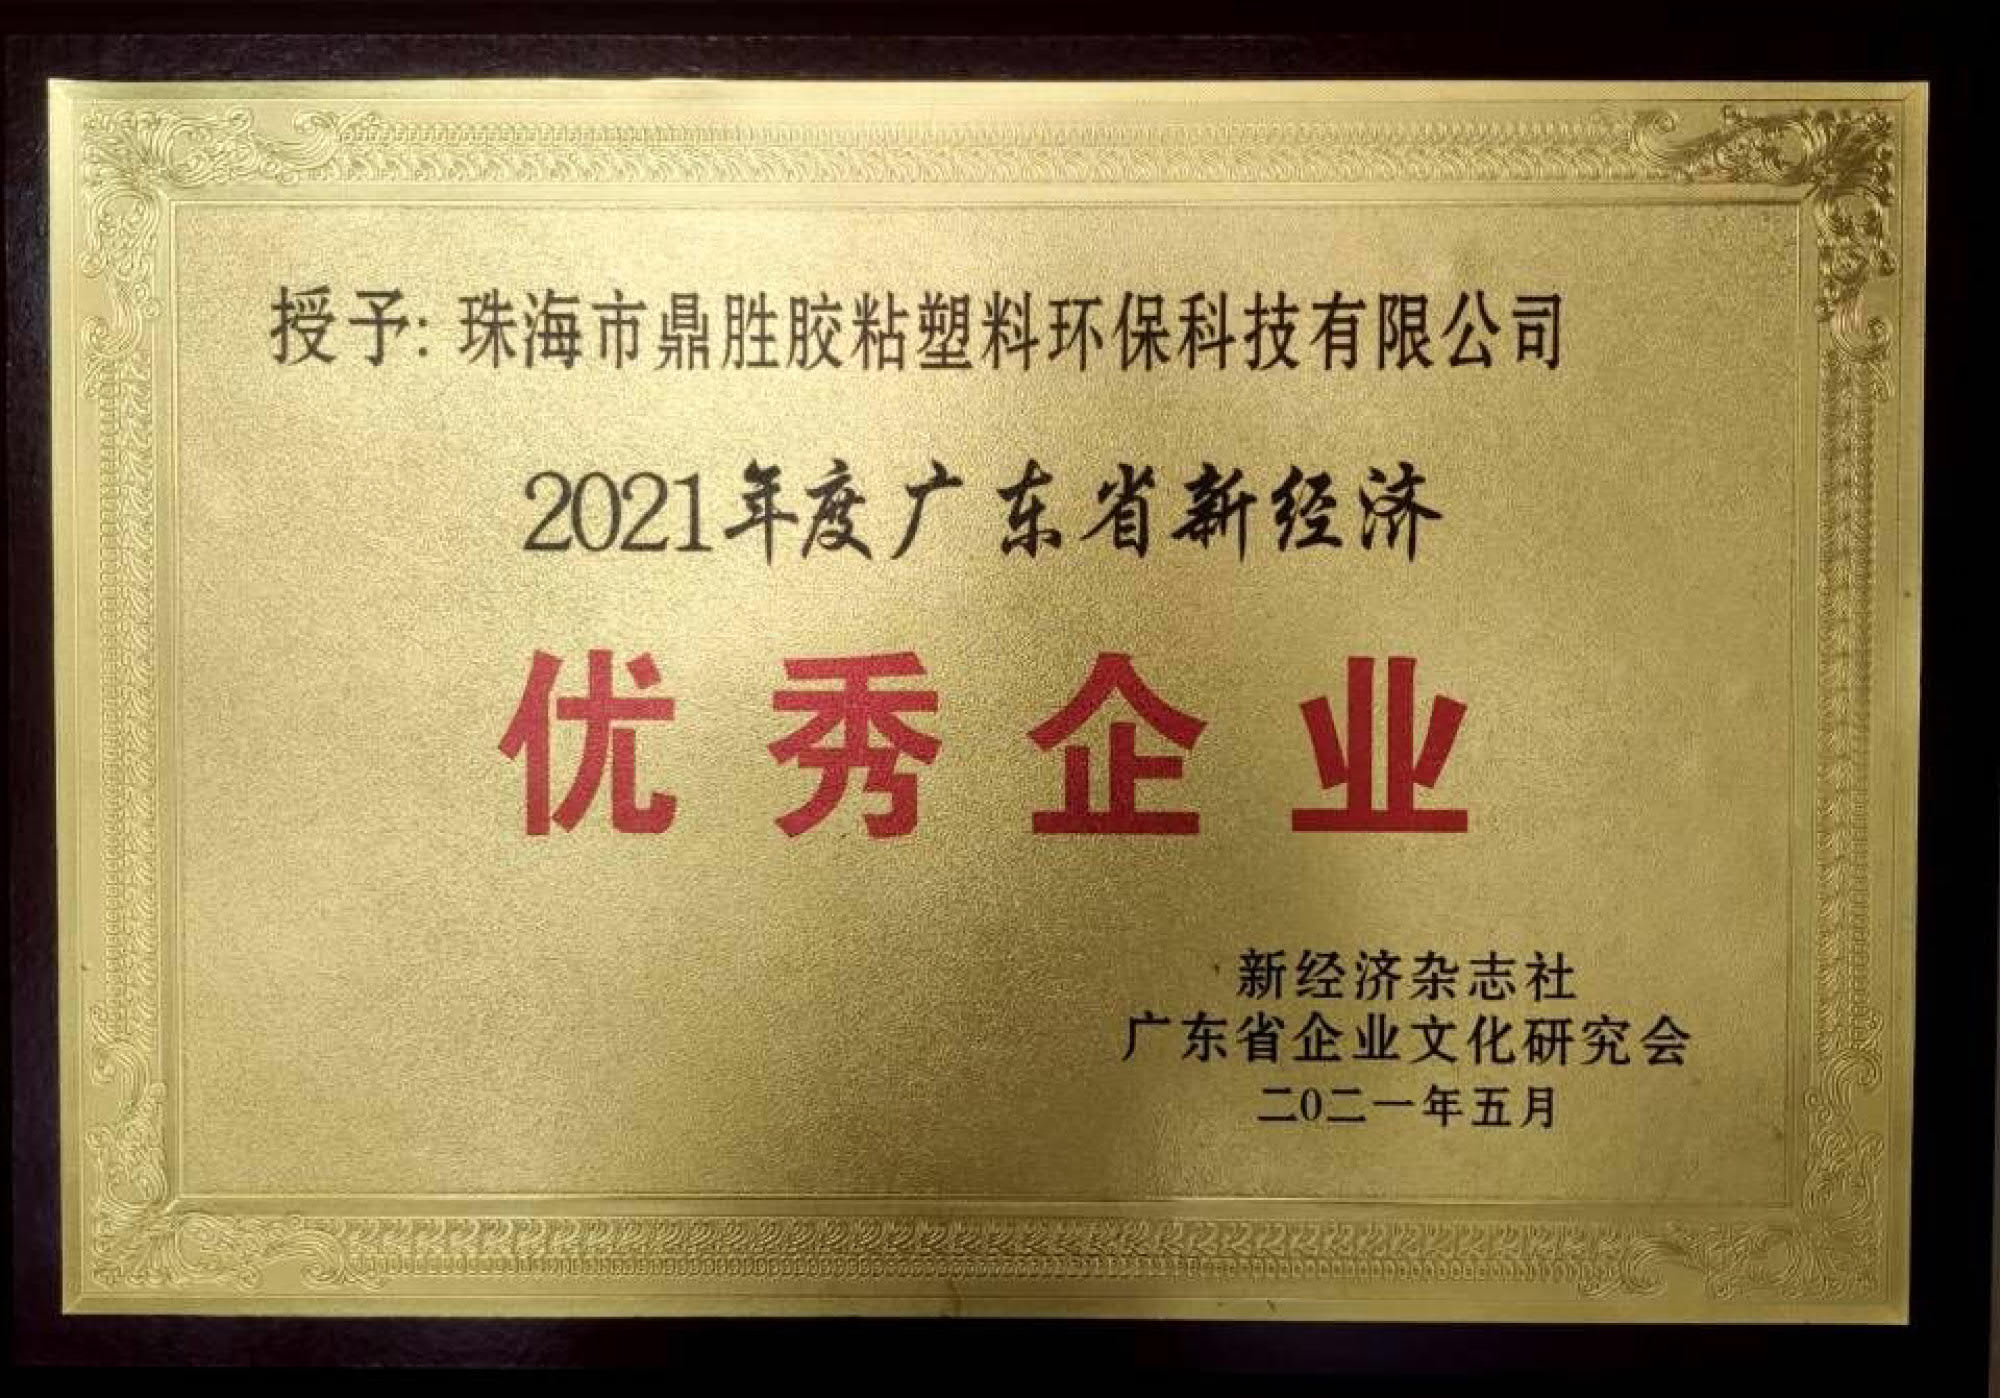 荣获2021年度广东省新经济企业